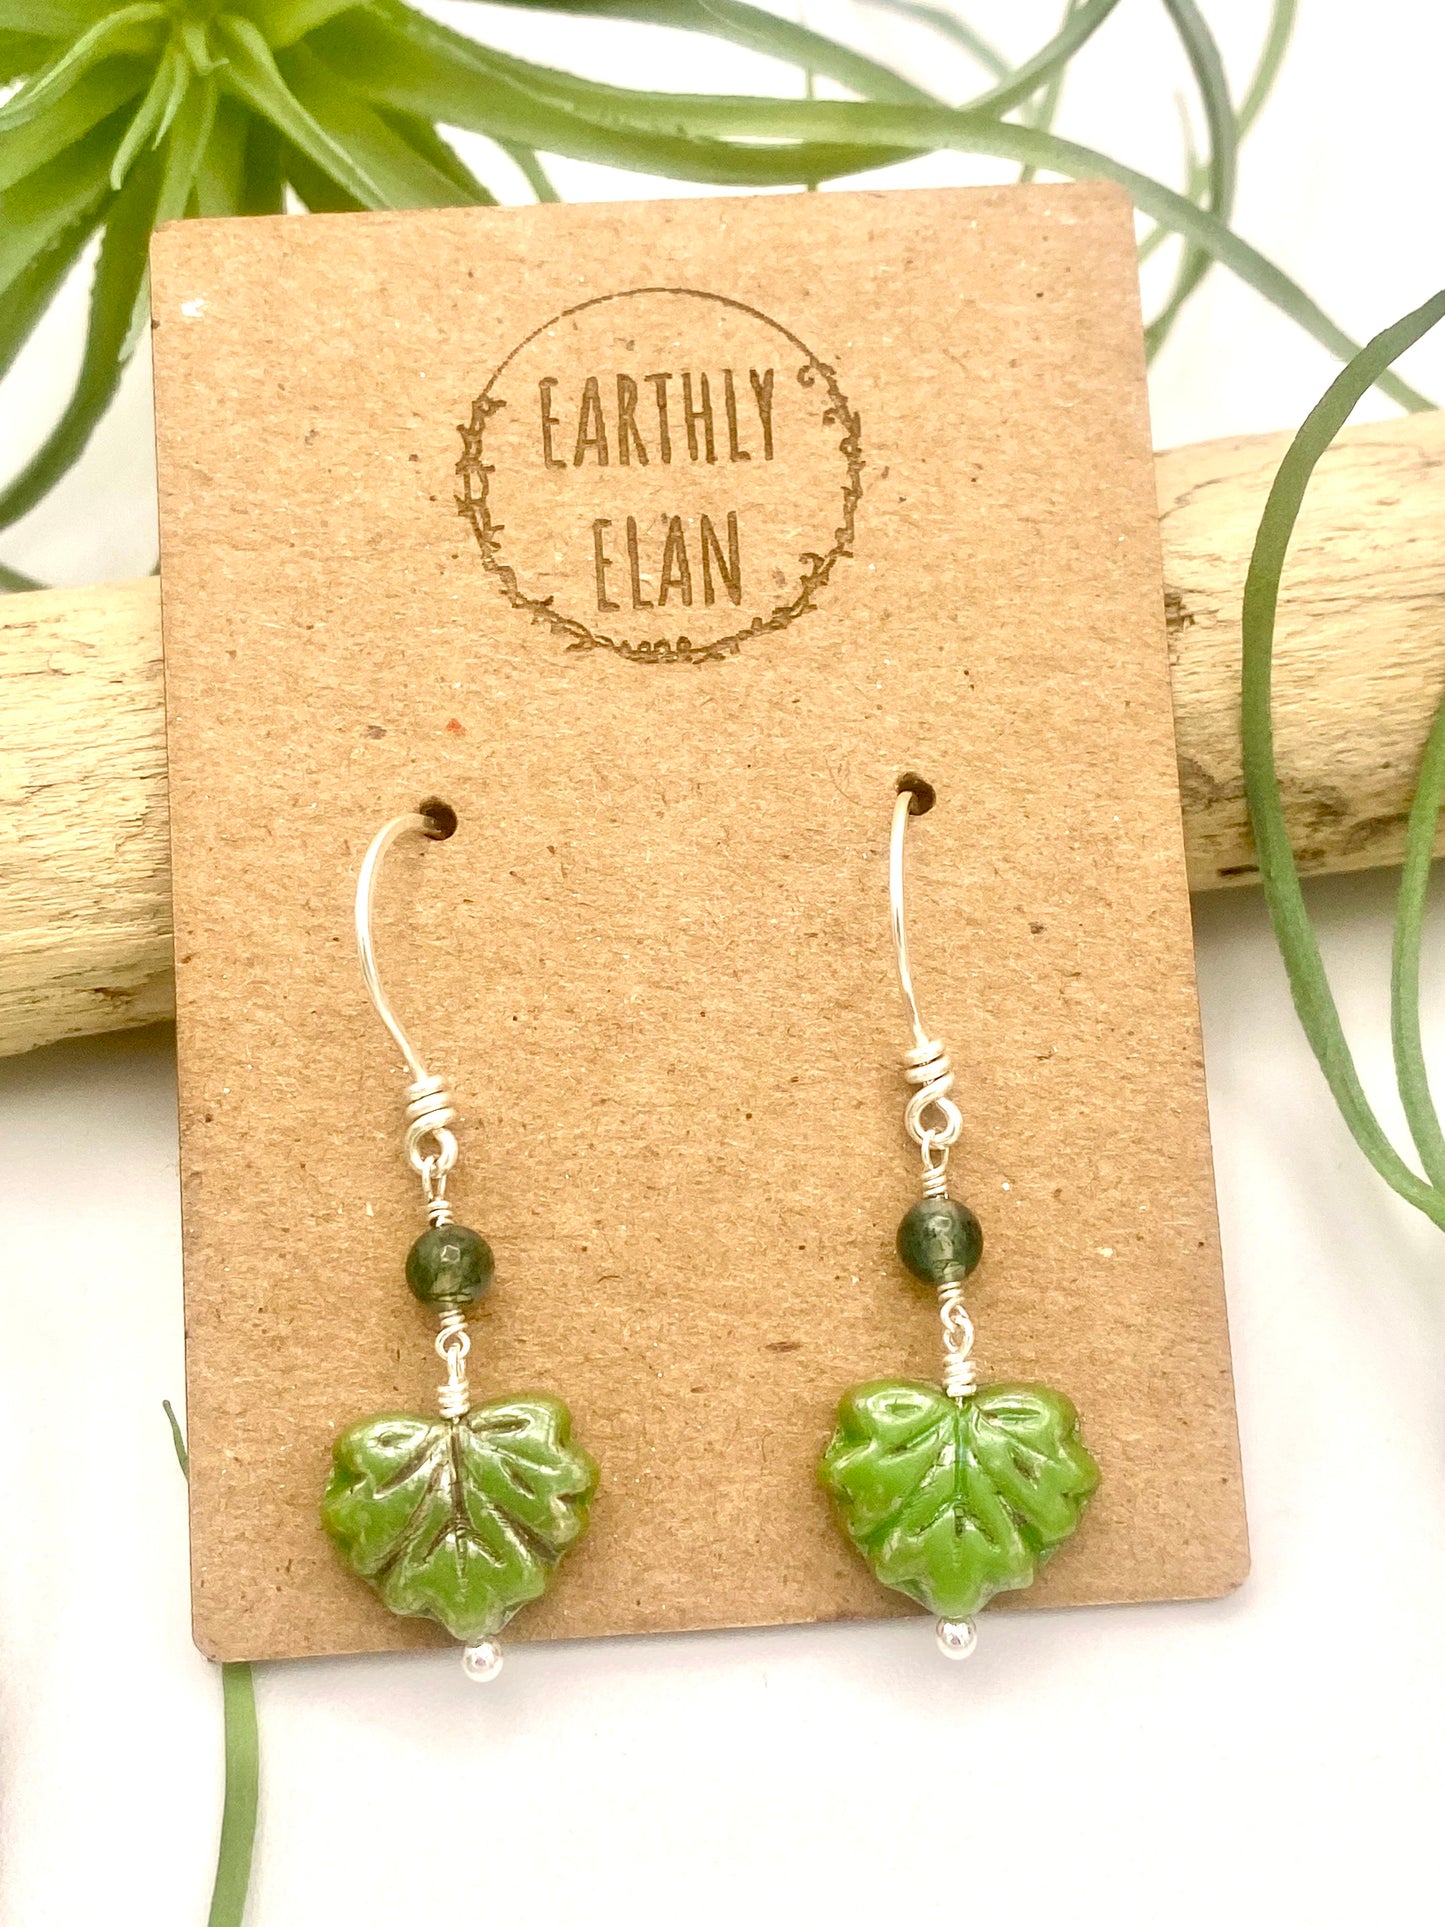 *BESTSELLING* Leaf Peeper Earrings - Earthly Elan